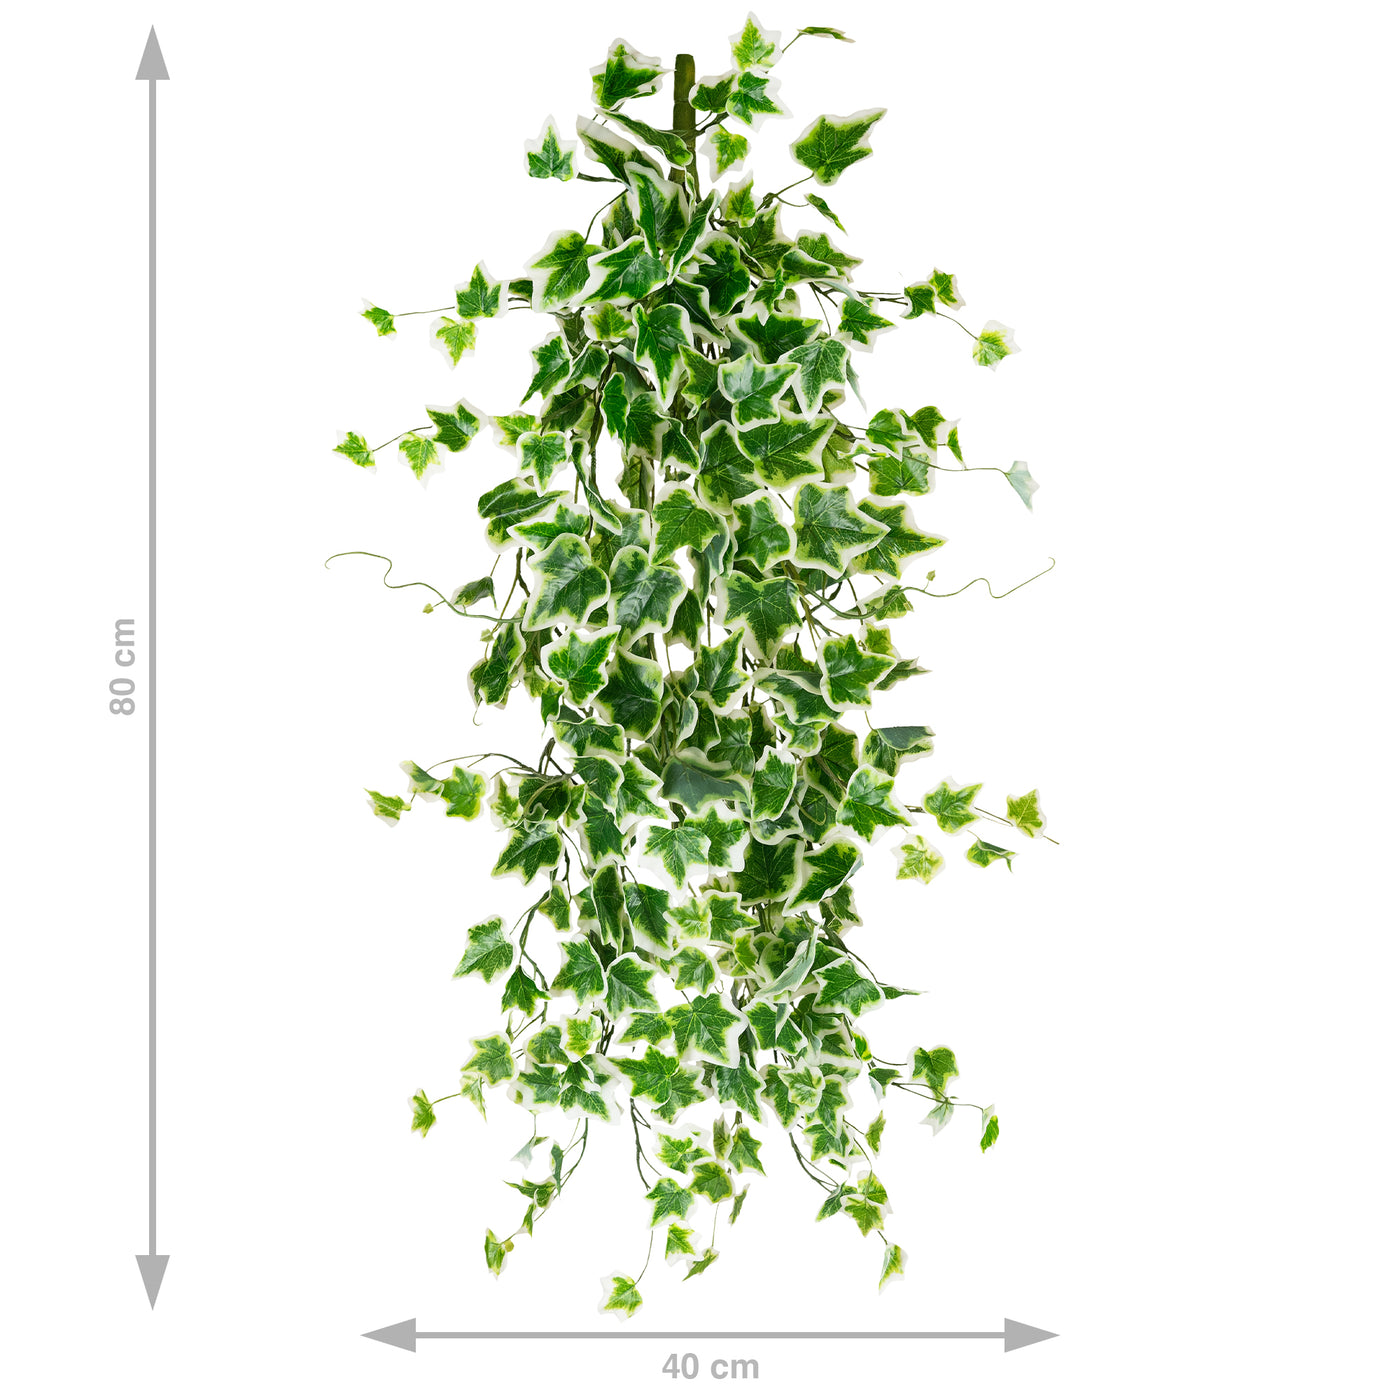 Iedera artificiala H80cm cu frunze verde cu alb pentru exterior cu protectie UV